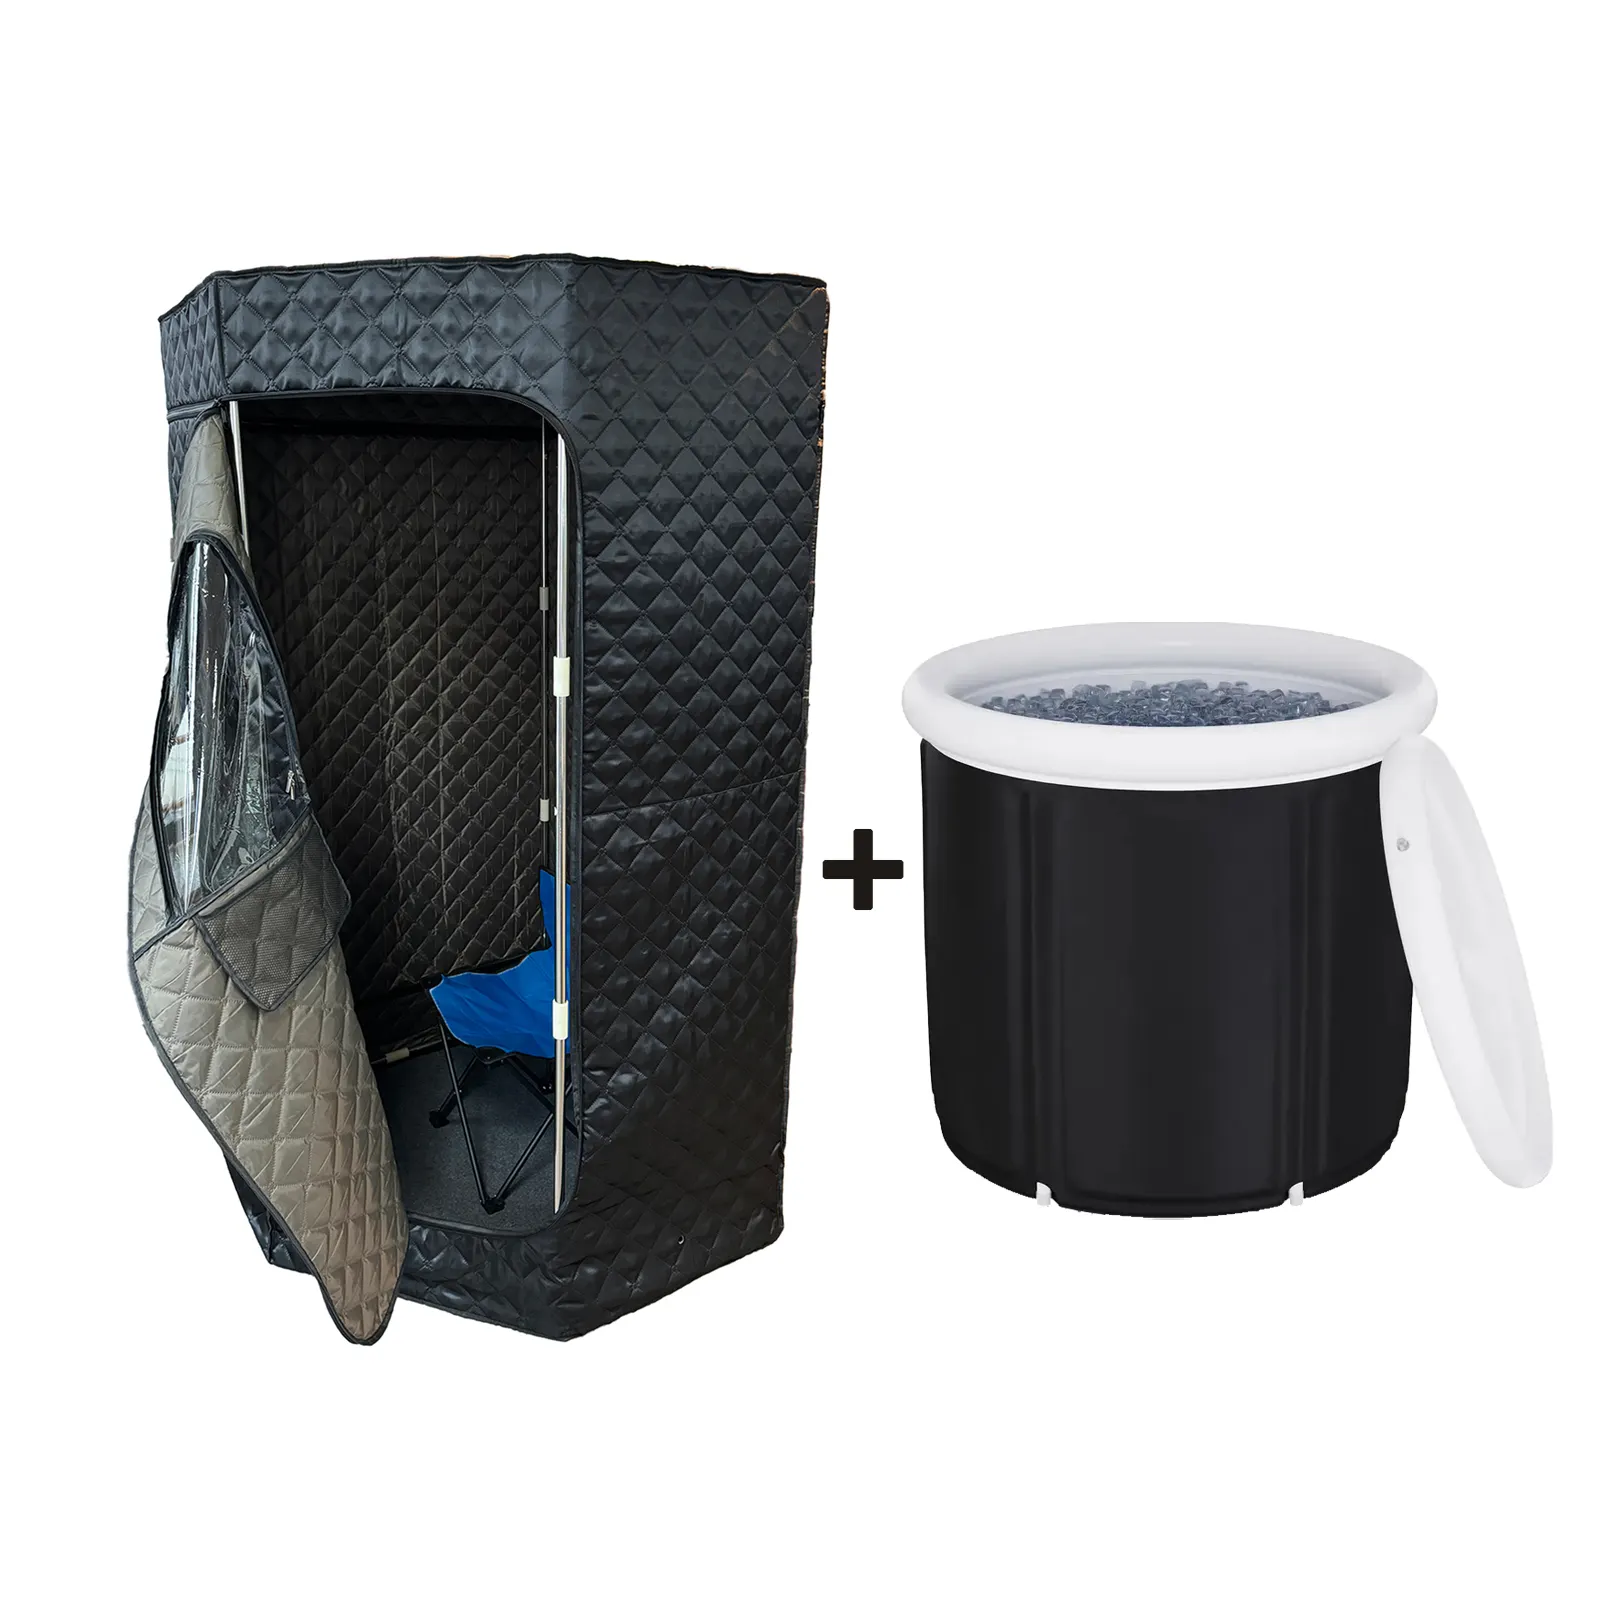 Haushalt-Recycling-Kompartiment tragbares Paket mit Kalteneinsatz wärmewassertherapie-Kombination Saunazelt und Eisbad